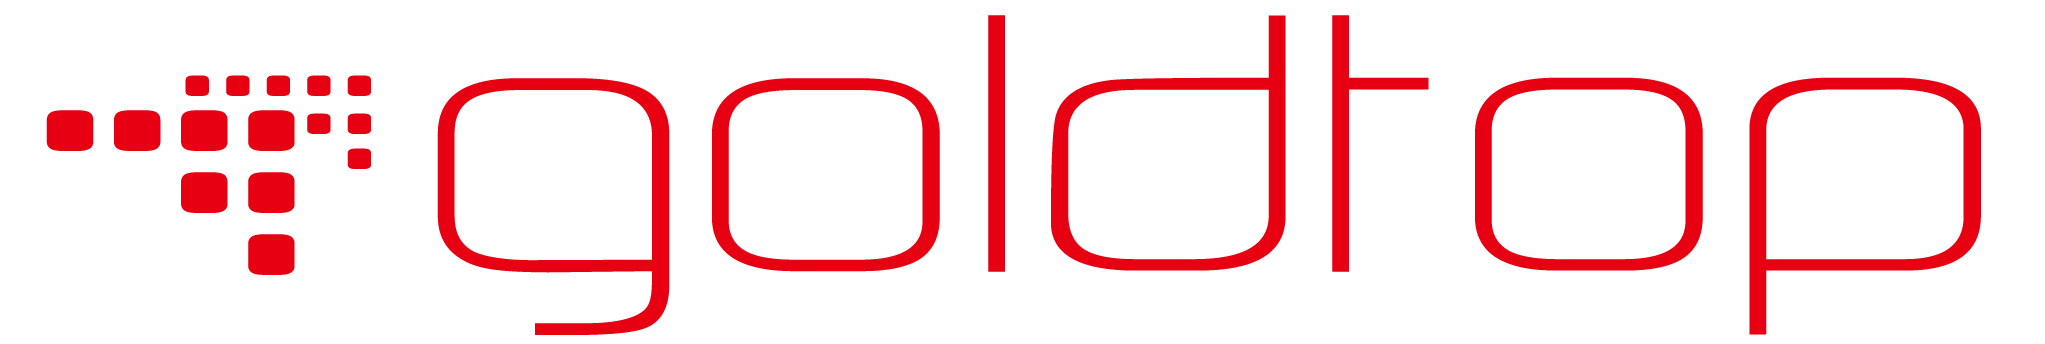 Goldtop logo